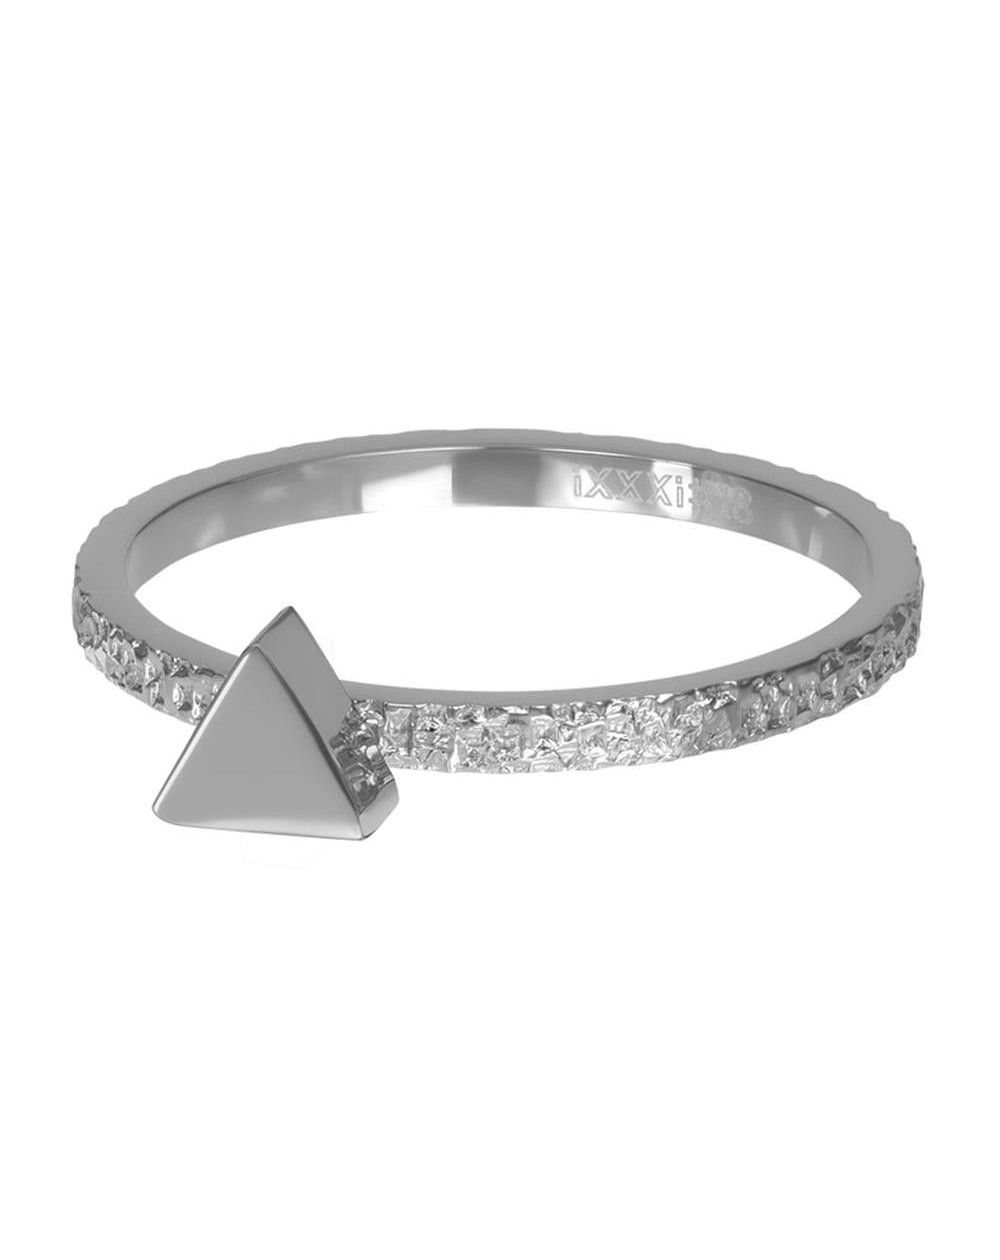 Abstract triangle 2mm argenté - R06303-03 - Bijoux de marque iXXXi